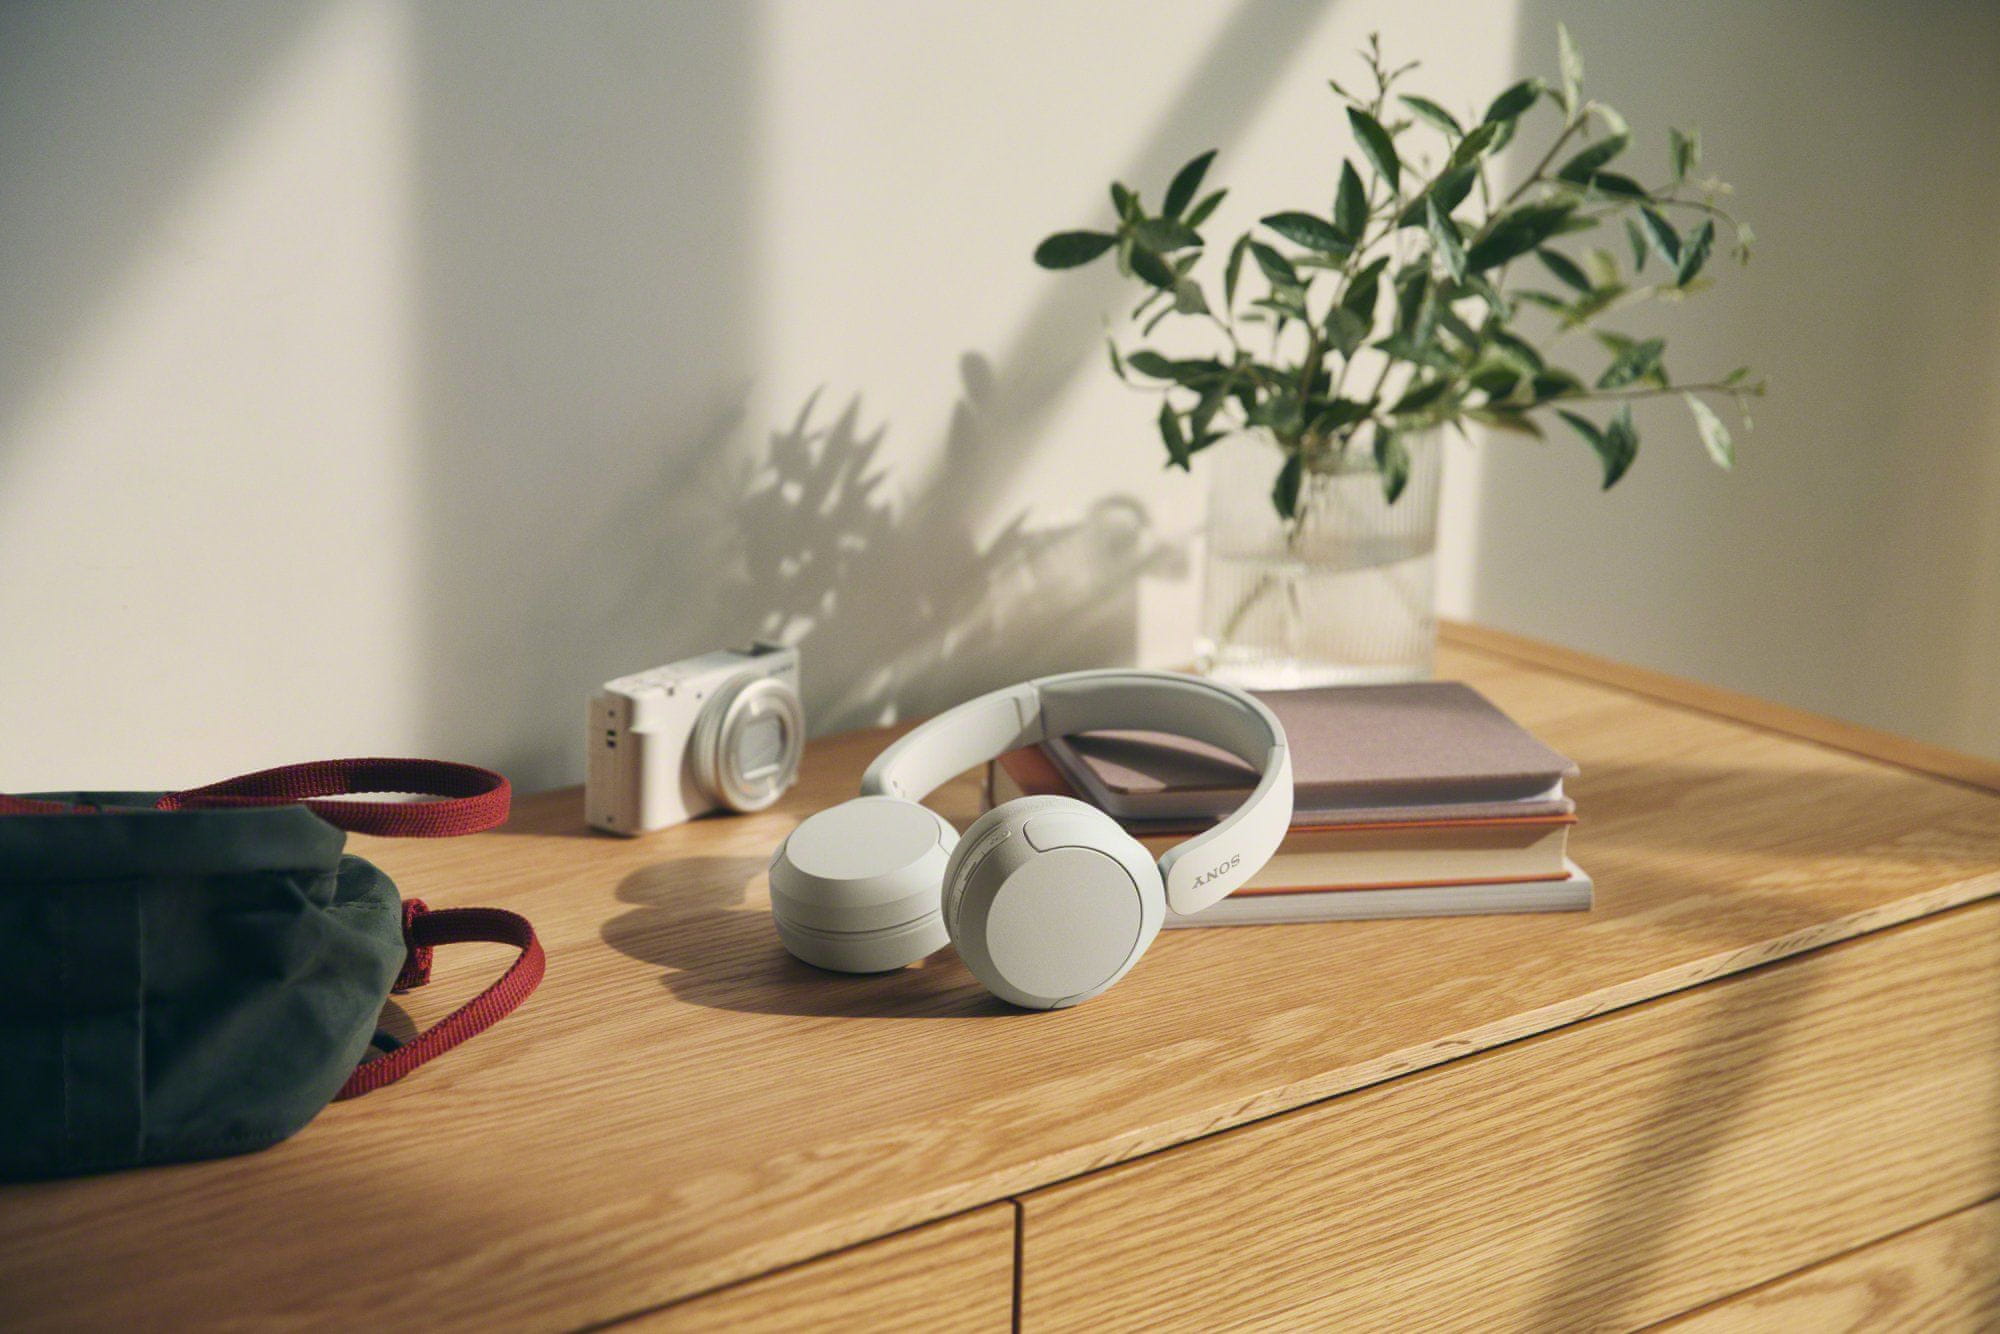  sodobne brezžične slušalke bluetooth 5.2 sony whch520 funkcije prostoročnega telefoniranja vrhunski zvok siri google voice control večtočkovno polnjenje usbc360 reality audio aplikacija 